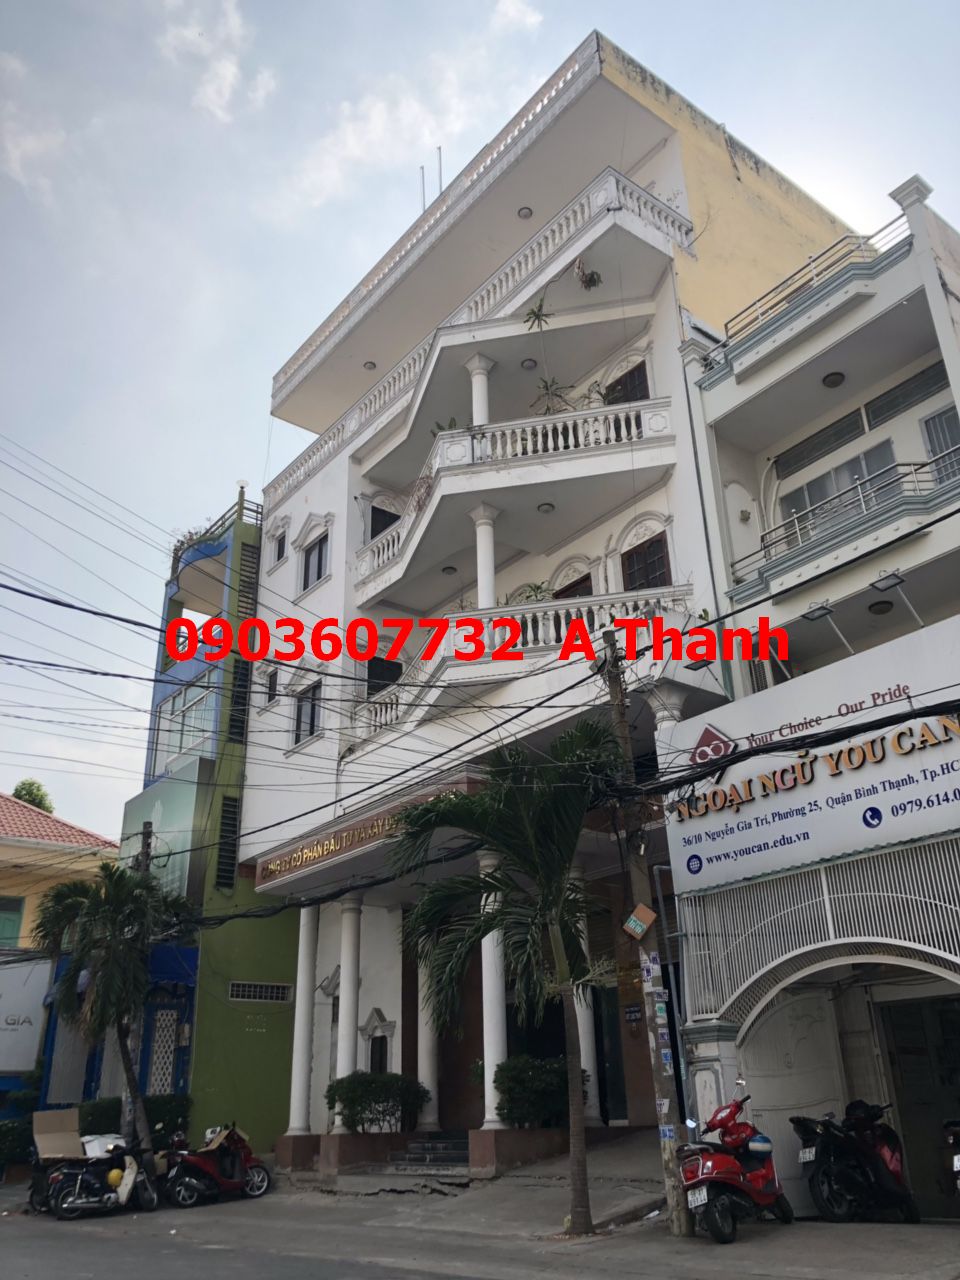 Bán nhà MT Đồng Khởi - Đông Du, Bến Nghé, Q1, DT 8x22m, giá rẻ 160 tỷ LH 0903607732  